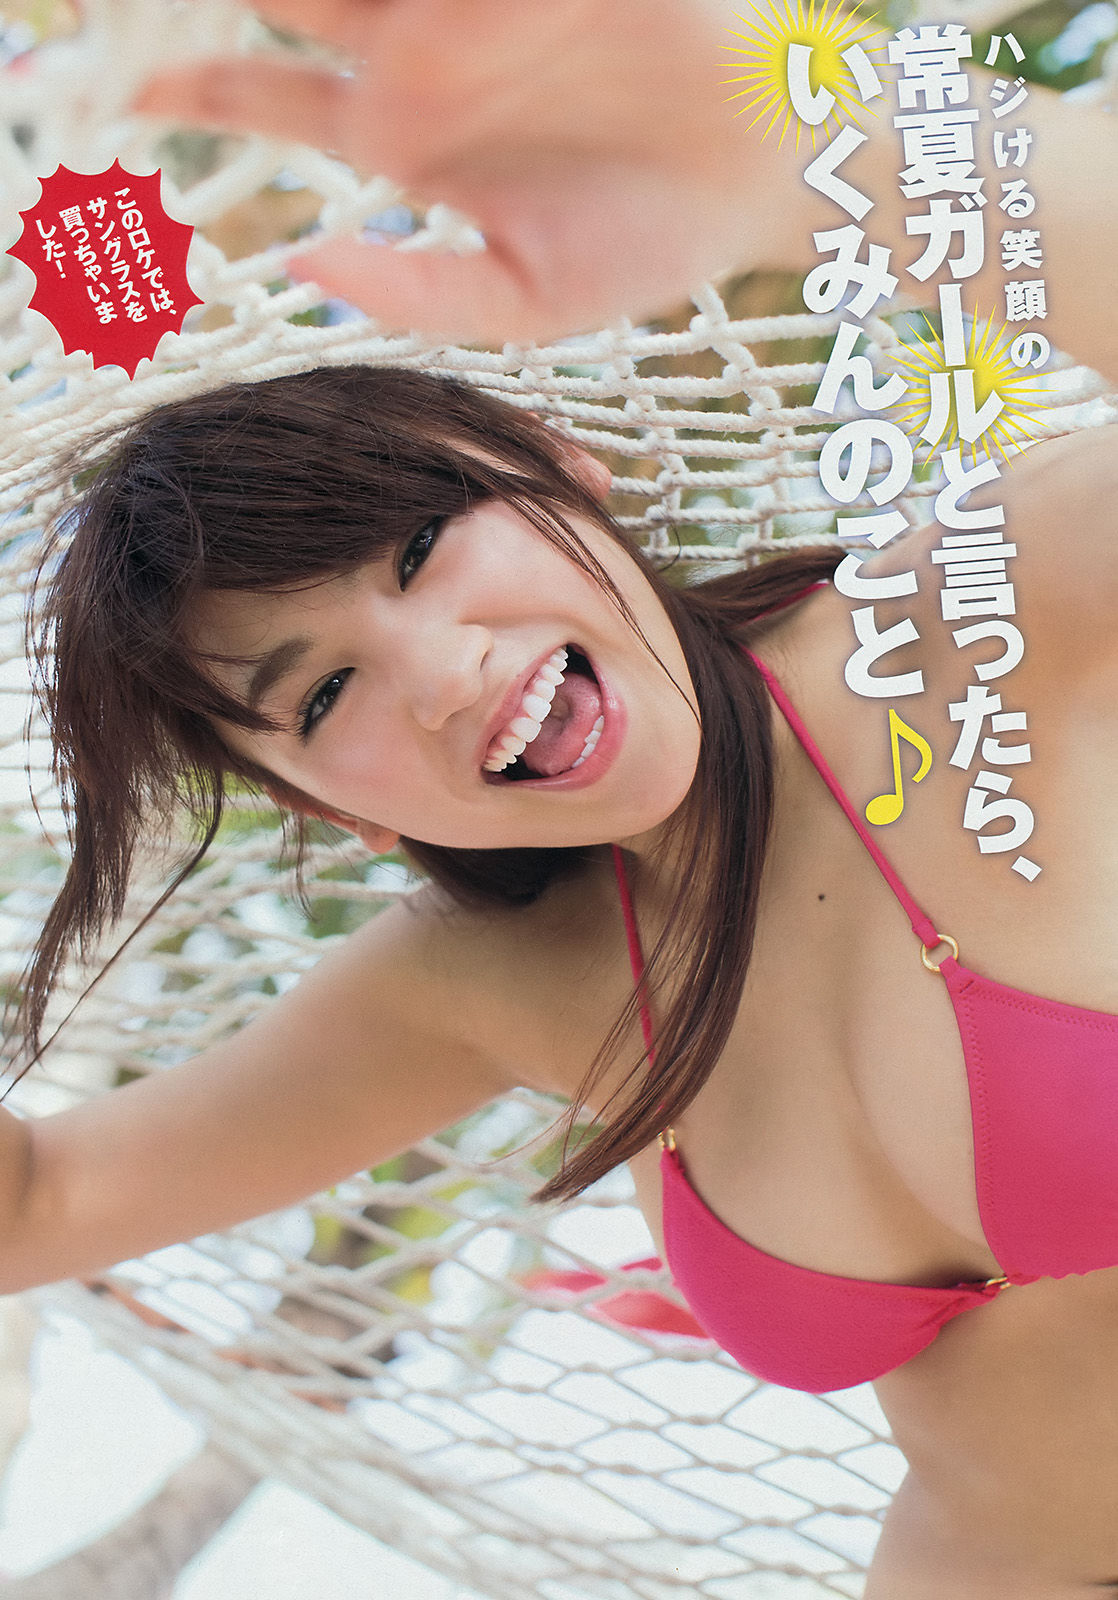 [Young Magazine] Ikumi Hisamatsu Haruna Kawaguchi 2014 No.32 Photograph Page 13 No.847095